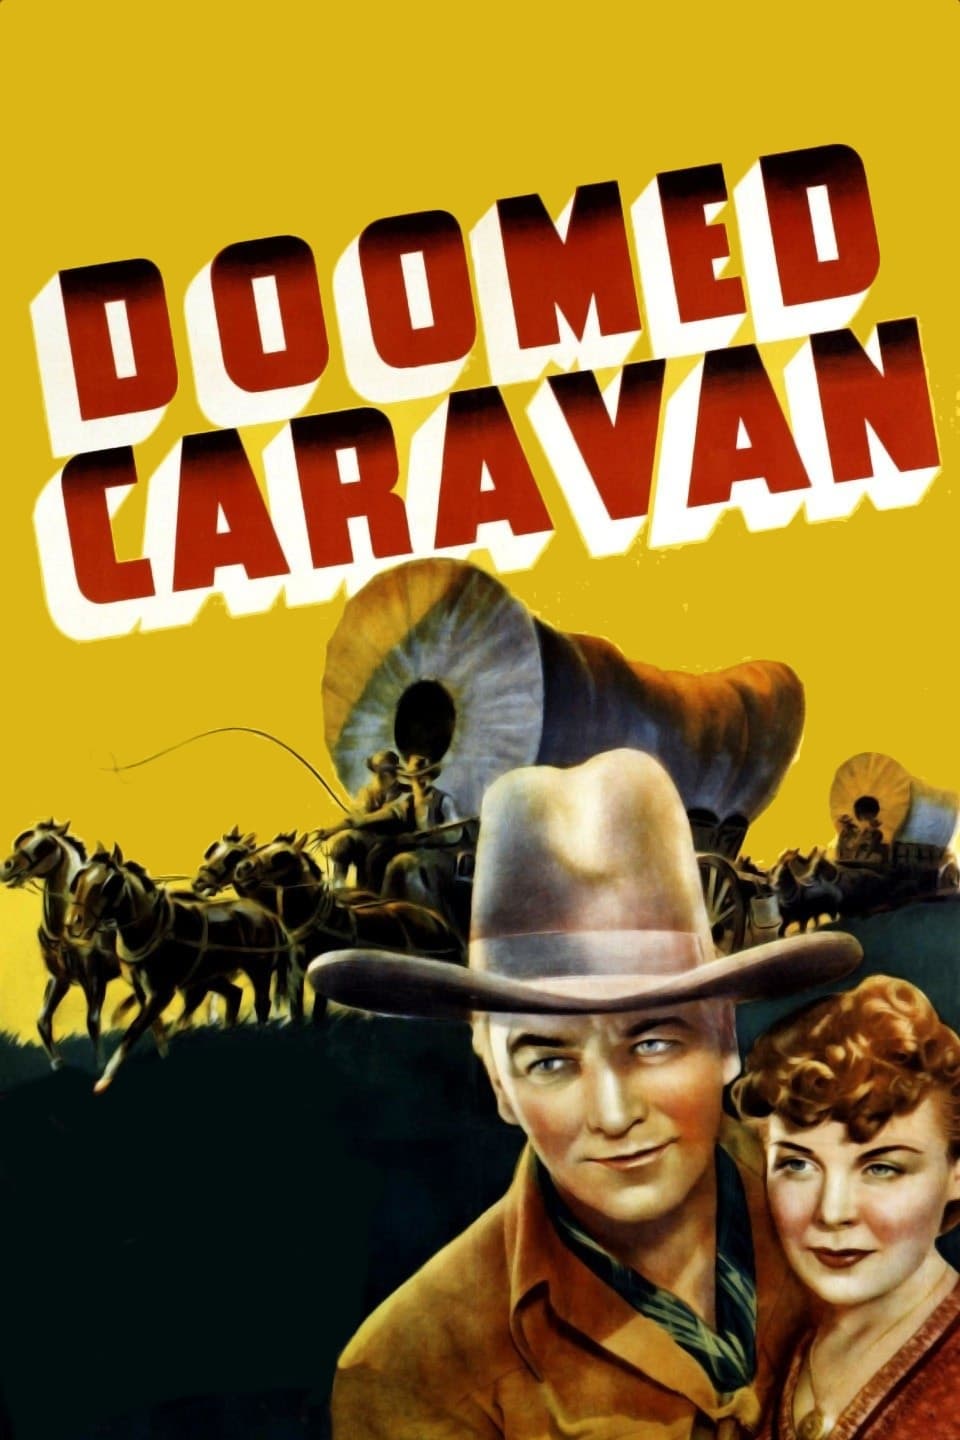 Doomed Caravan